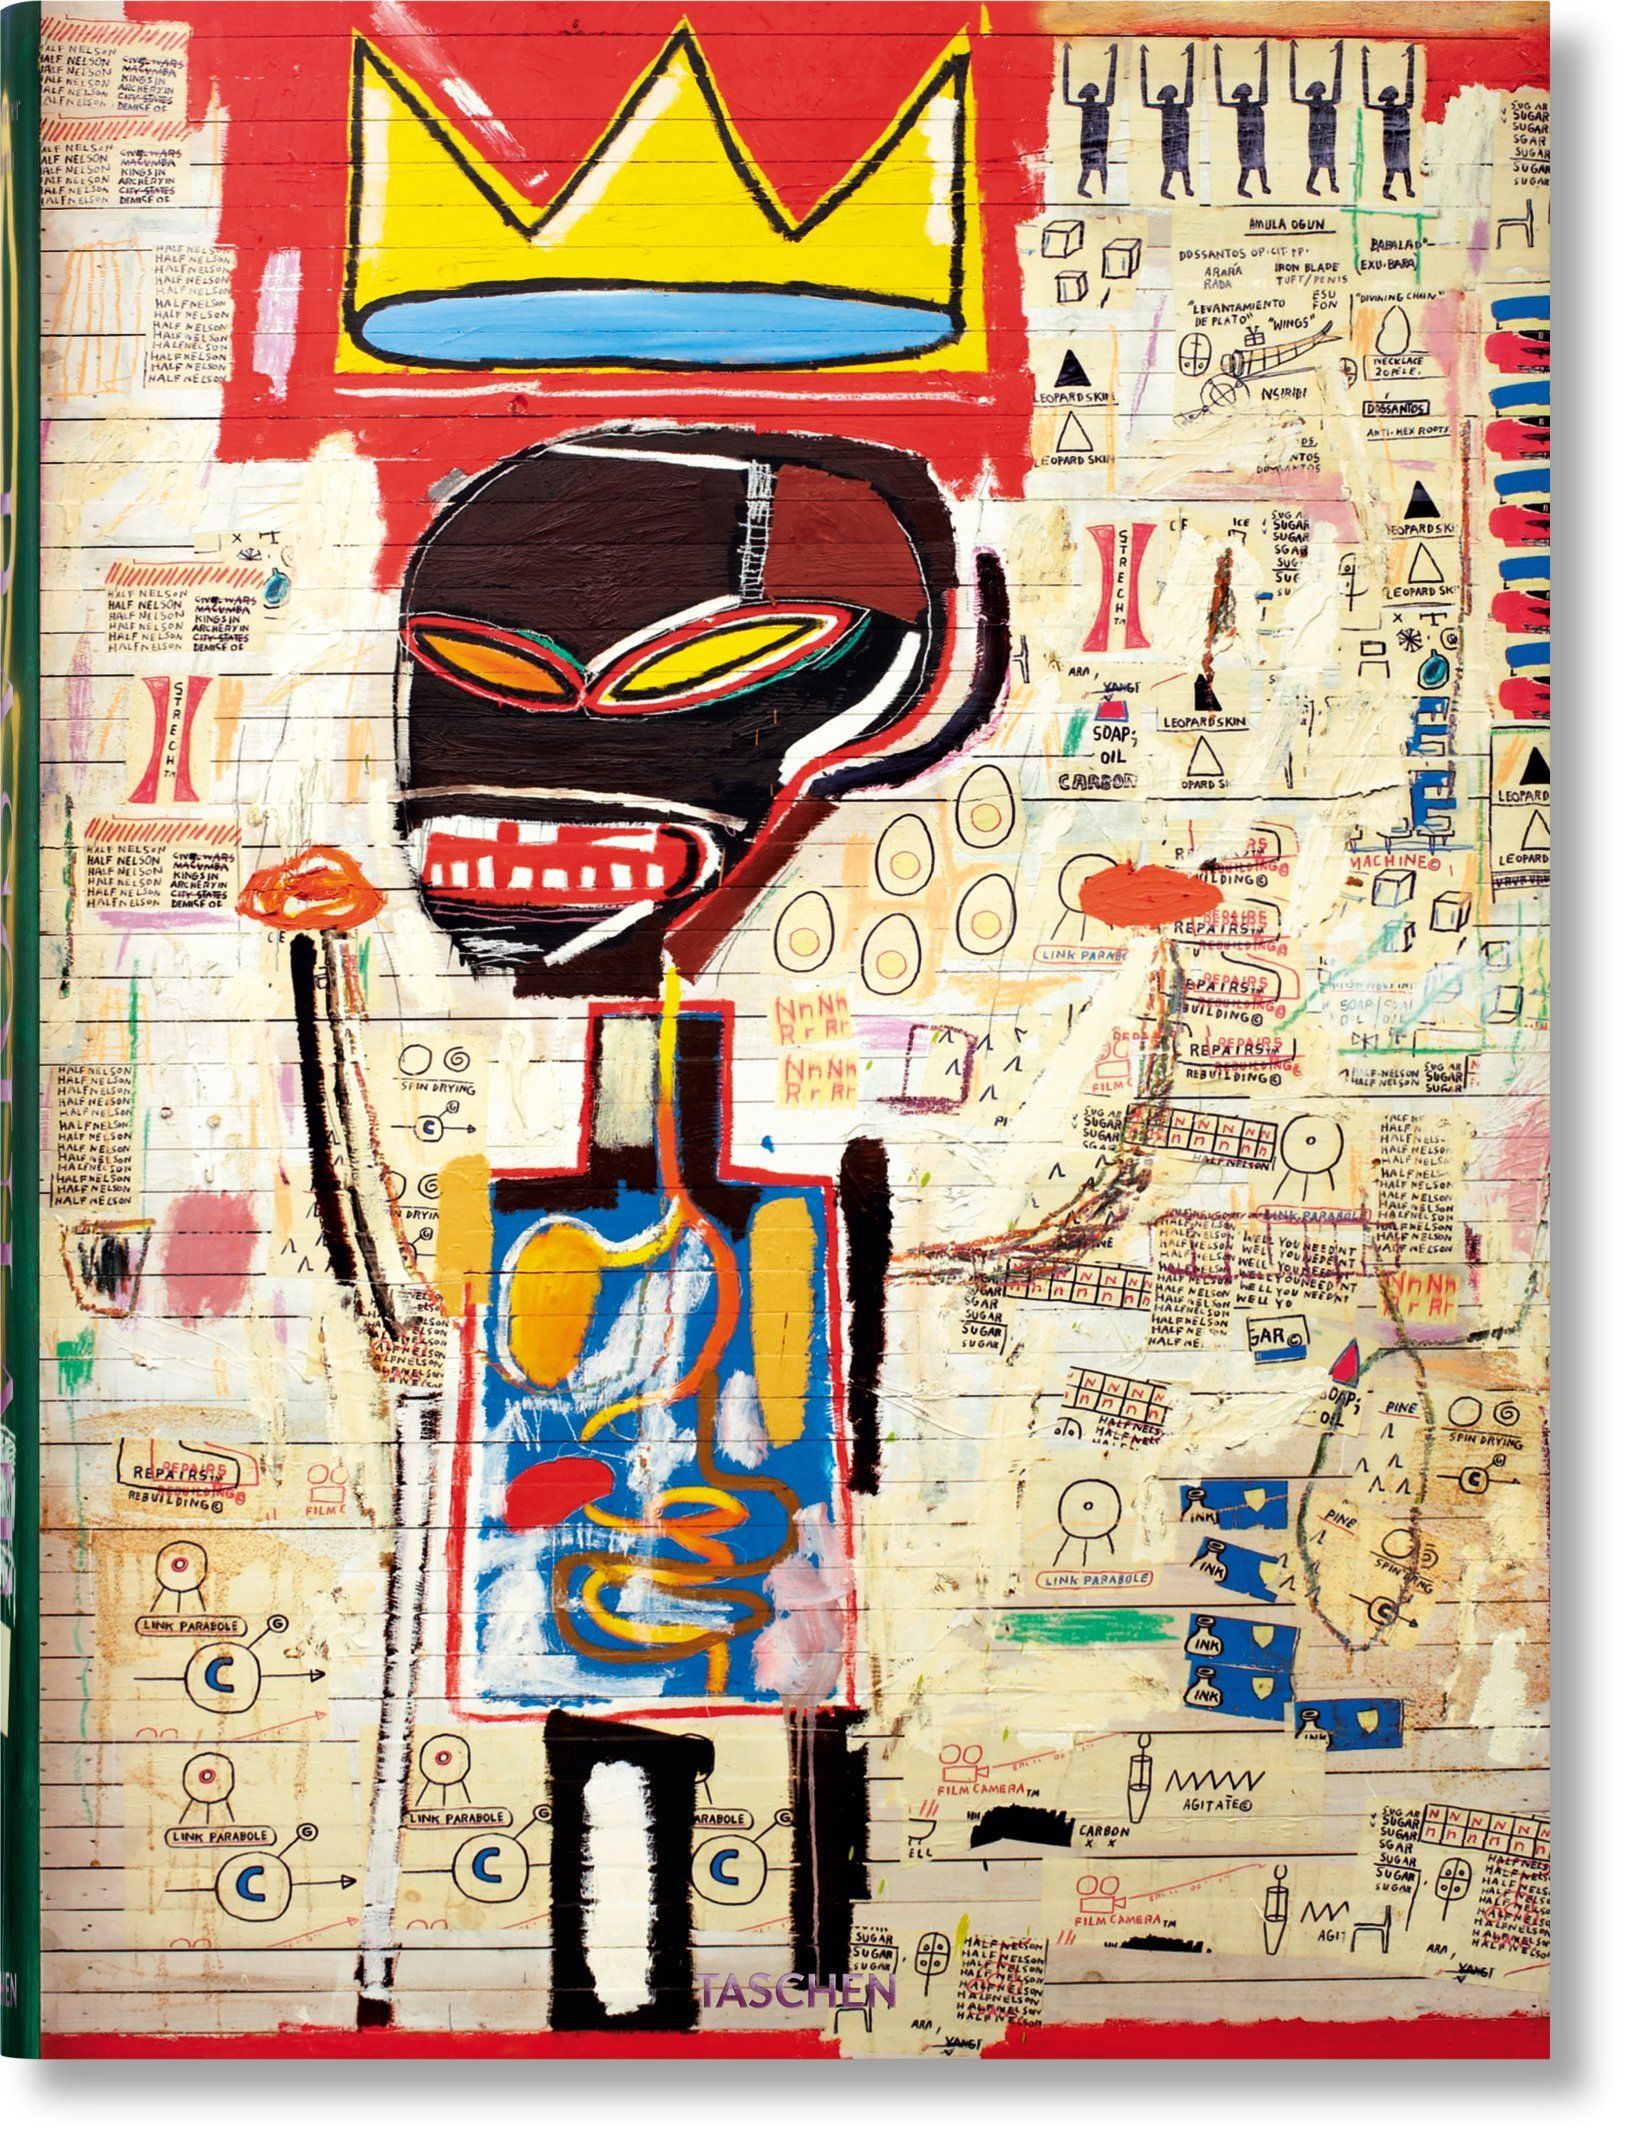 Holzwarth, Nairne - Basquiat